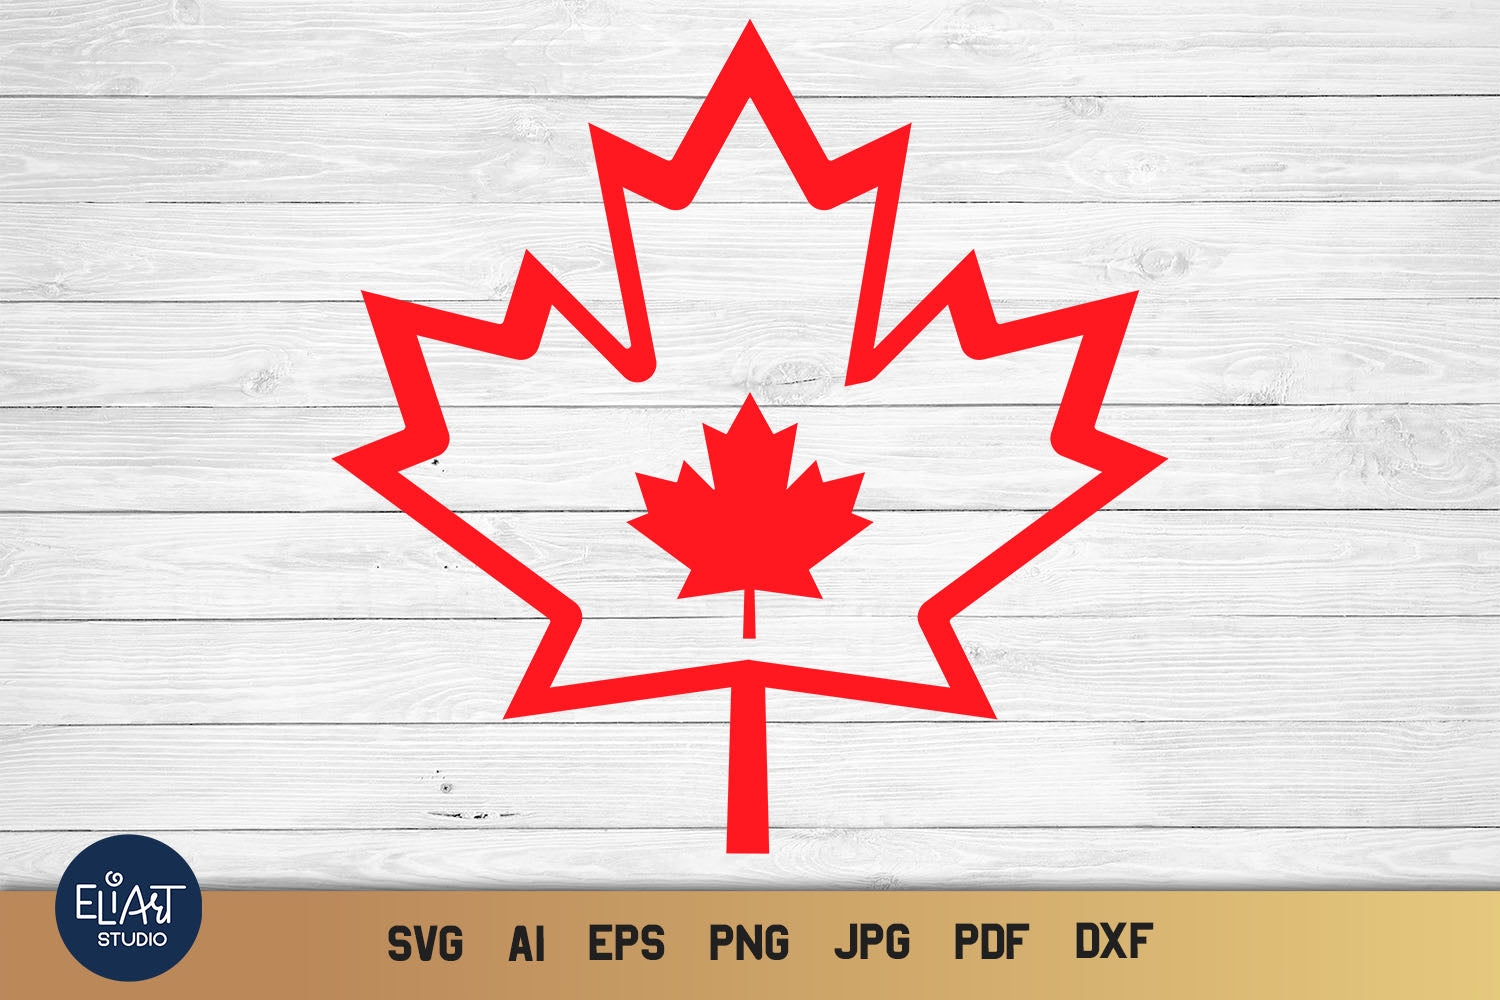 canadian leaf logo